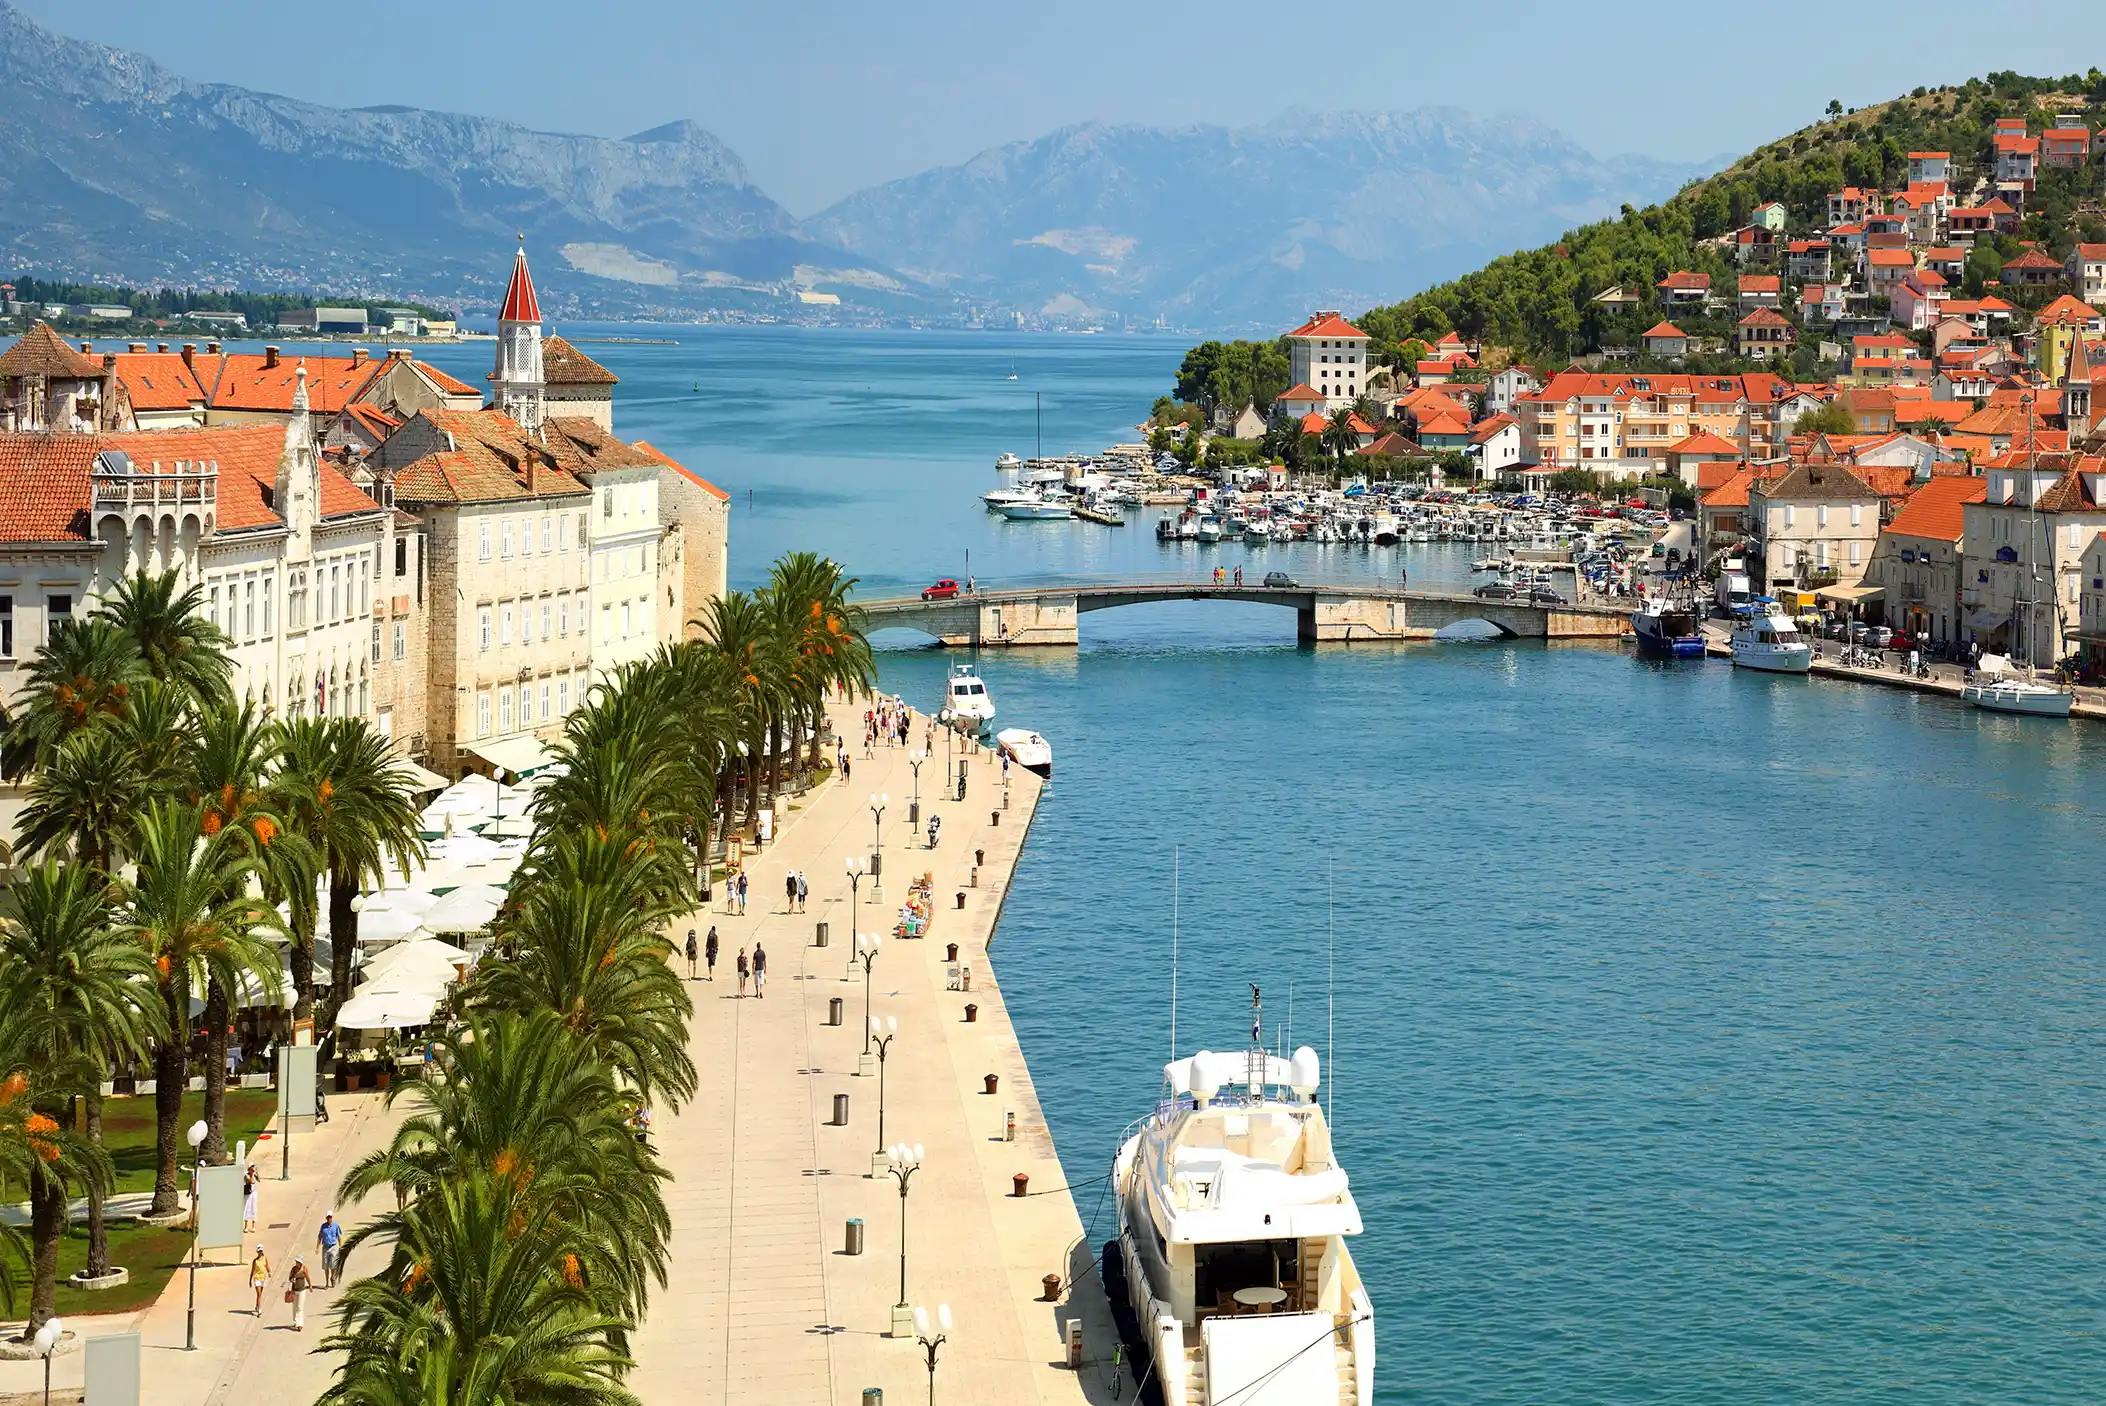 Port view of Trogir, Croatia